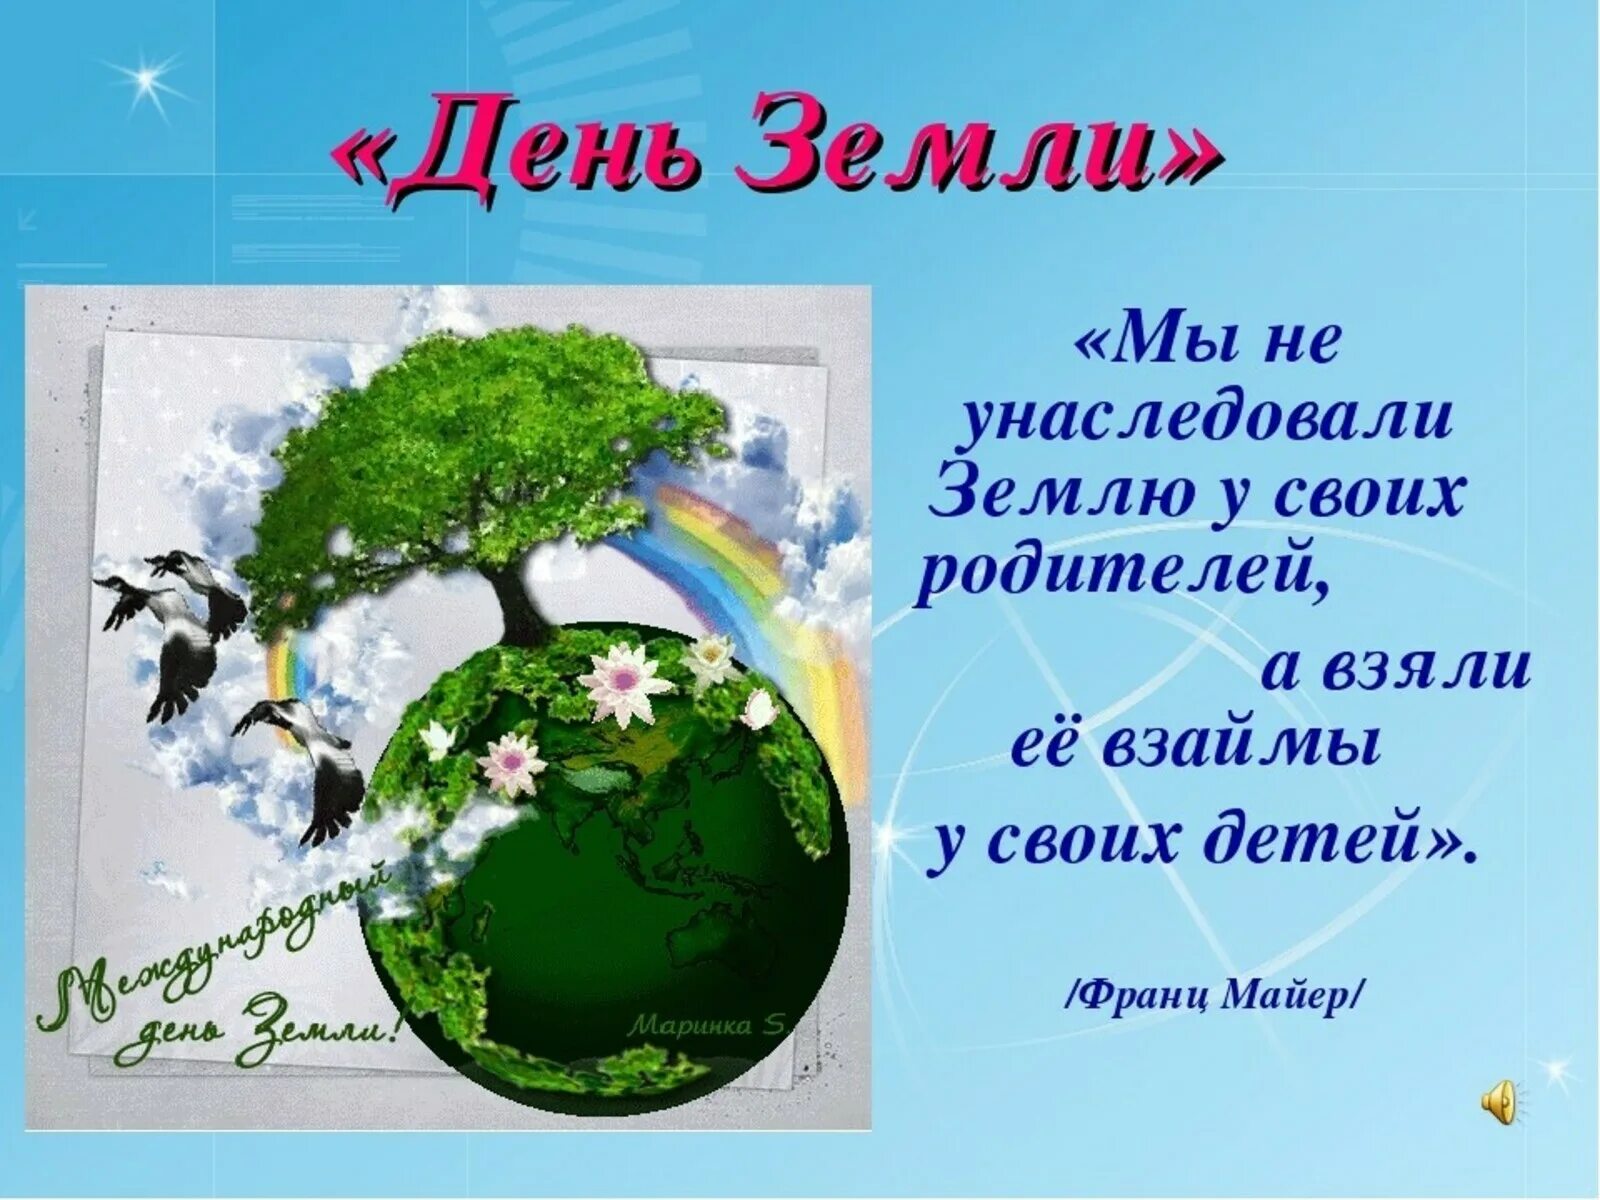 День земли. Всемирный день земли. С днем земли поздравления. День земли открытка. Международный праздник день земли